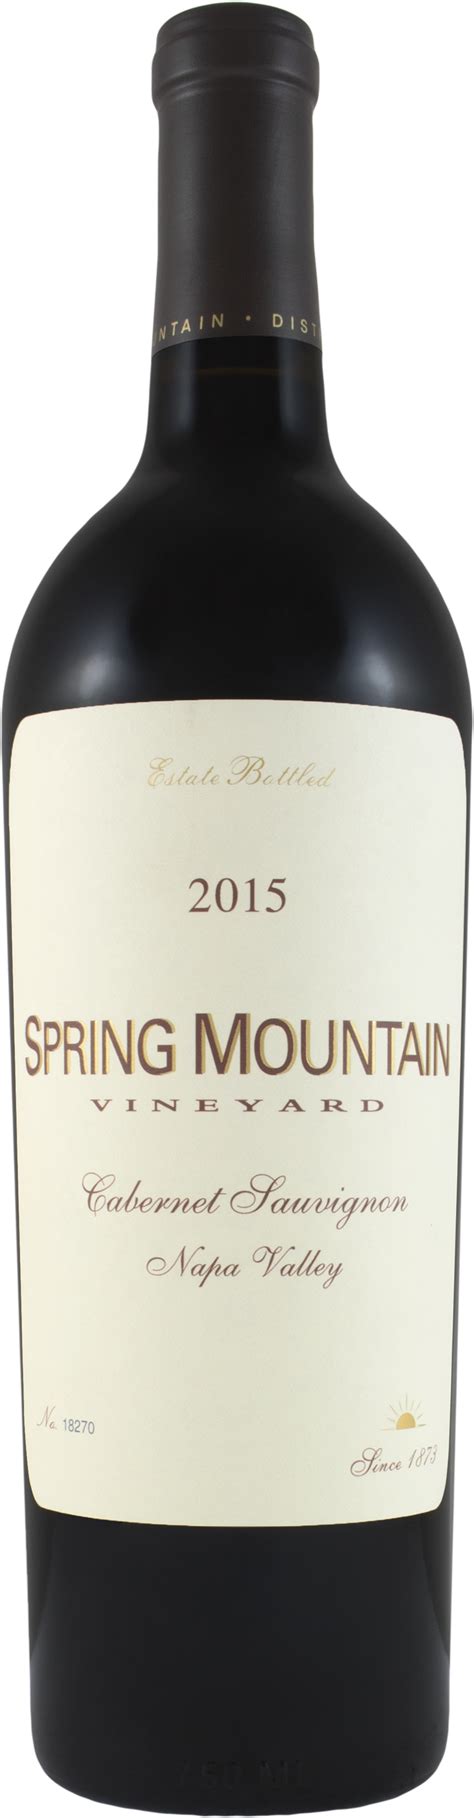 2015 Spring Mountain Vineyard Cabernet Sauvignon Wine Library